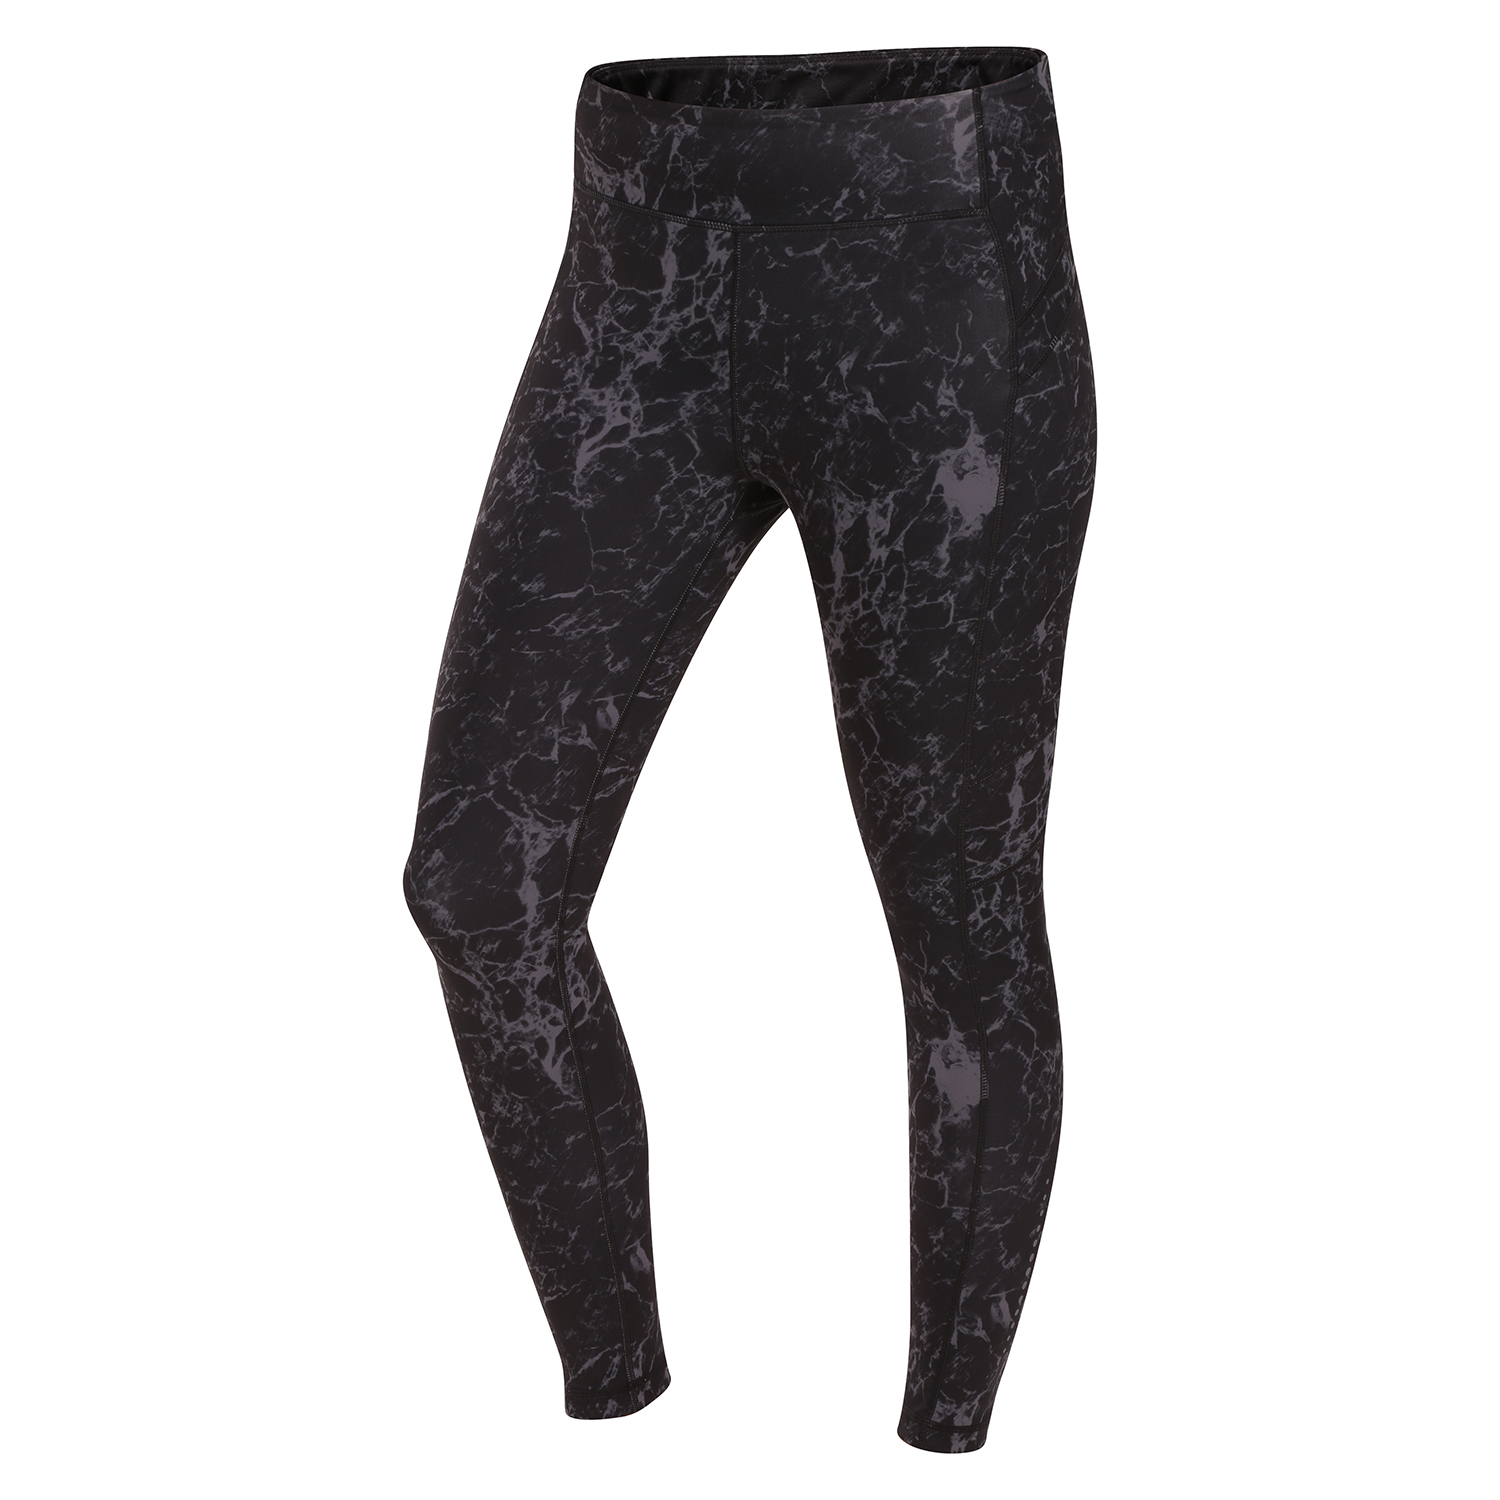 Women's leggings ALPINE PRO GOBRA black variant pd